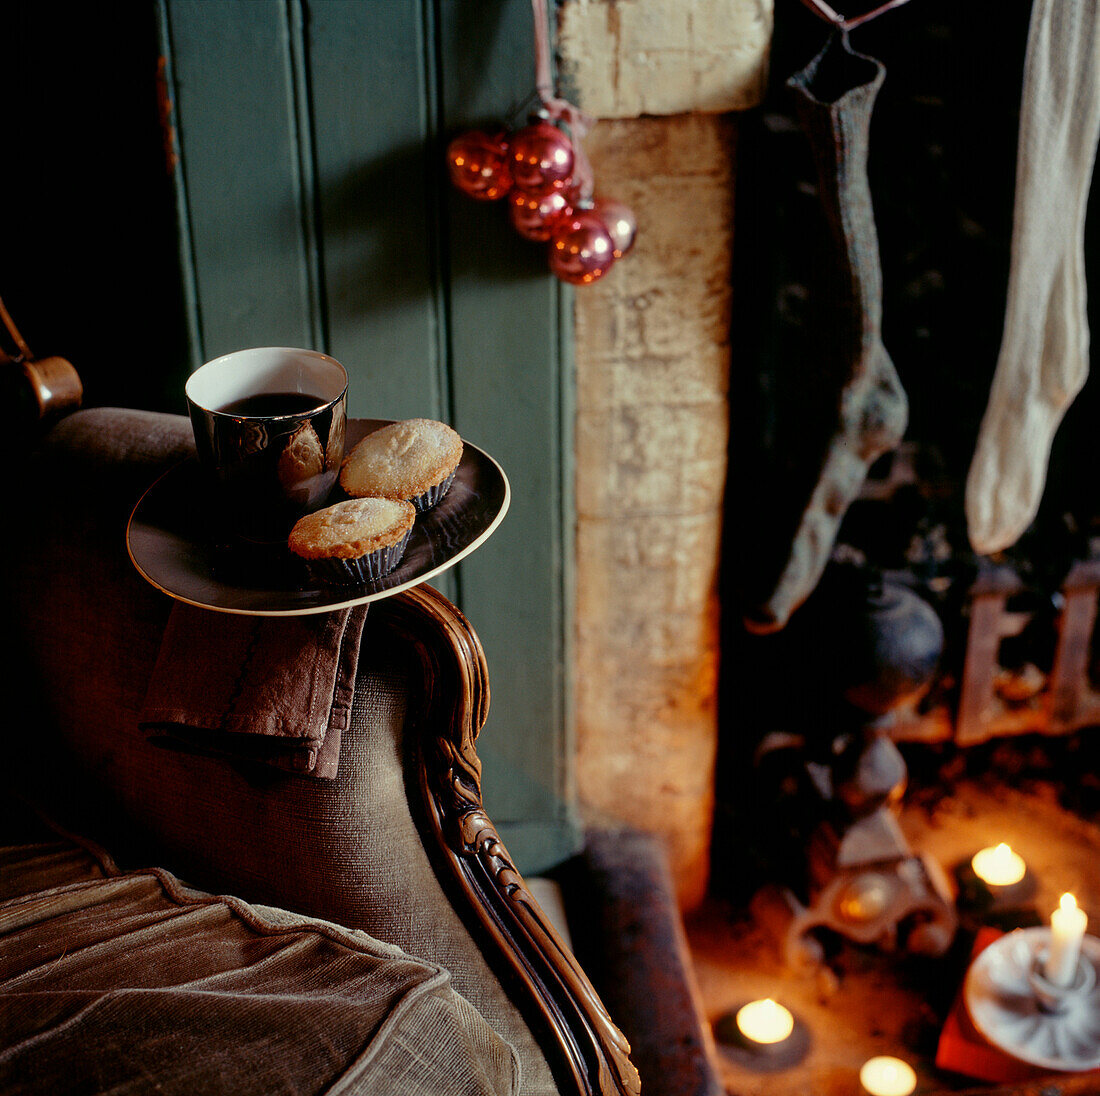 Gemütliches Vintage-Wohnzimmer mit Kamin, Kerzen, Mince Pies und Strümpfen, die am Weihnachtsabend aufgehängt werden